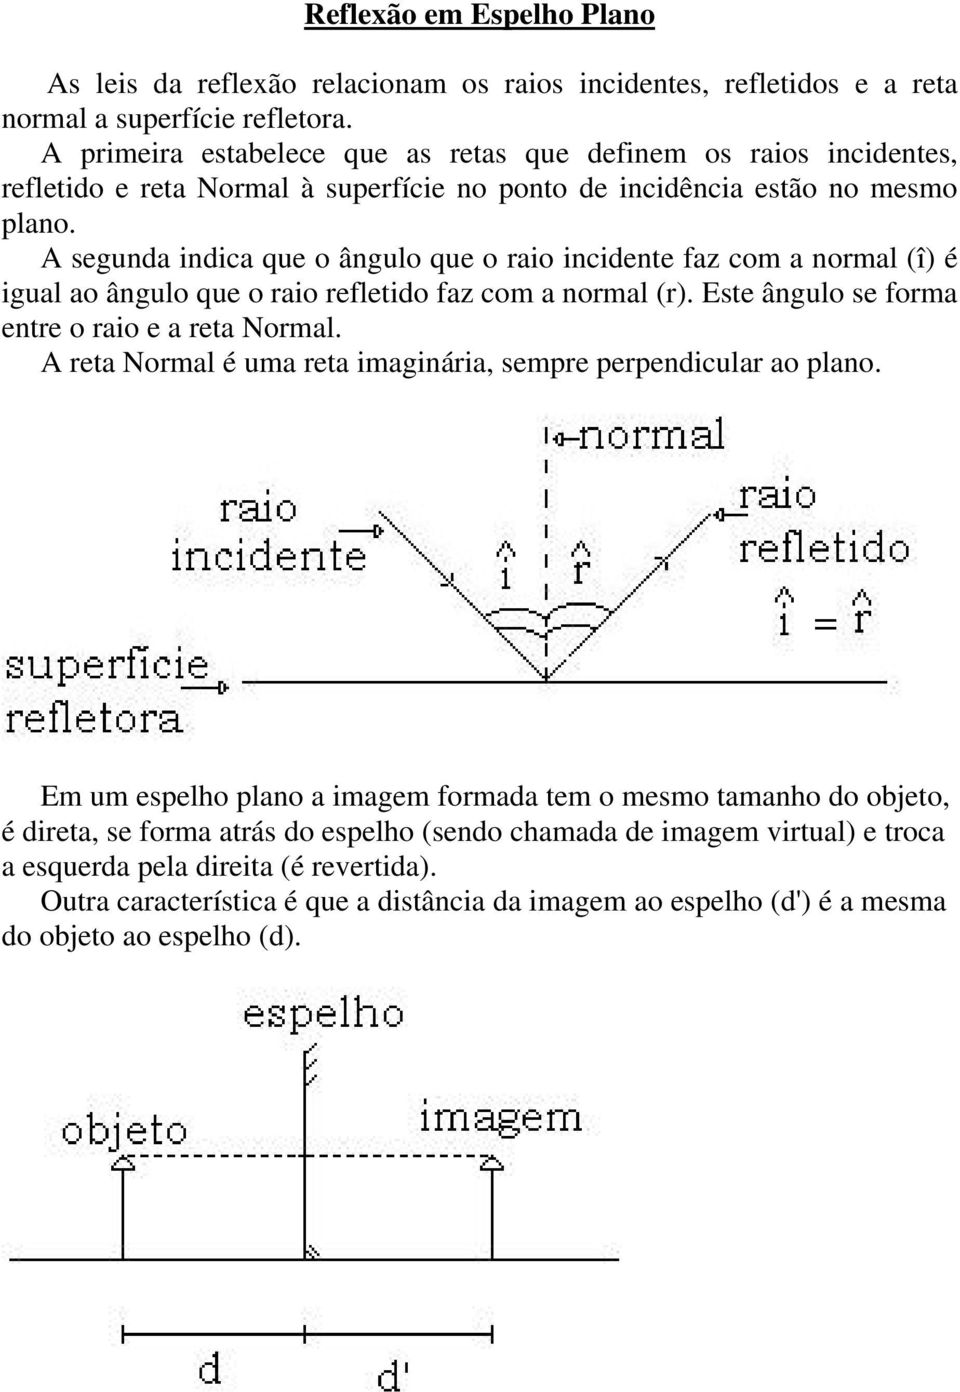 A segunda indica que o ângulo que o raio incidente faz com a normal (î) é igual ao ângulo que o raio refletido faz com a normal (r). Este ângulo se forma entre o raio e a reta Normal.